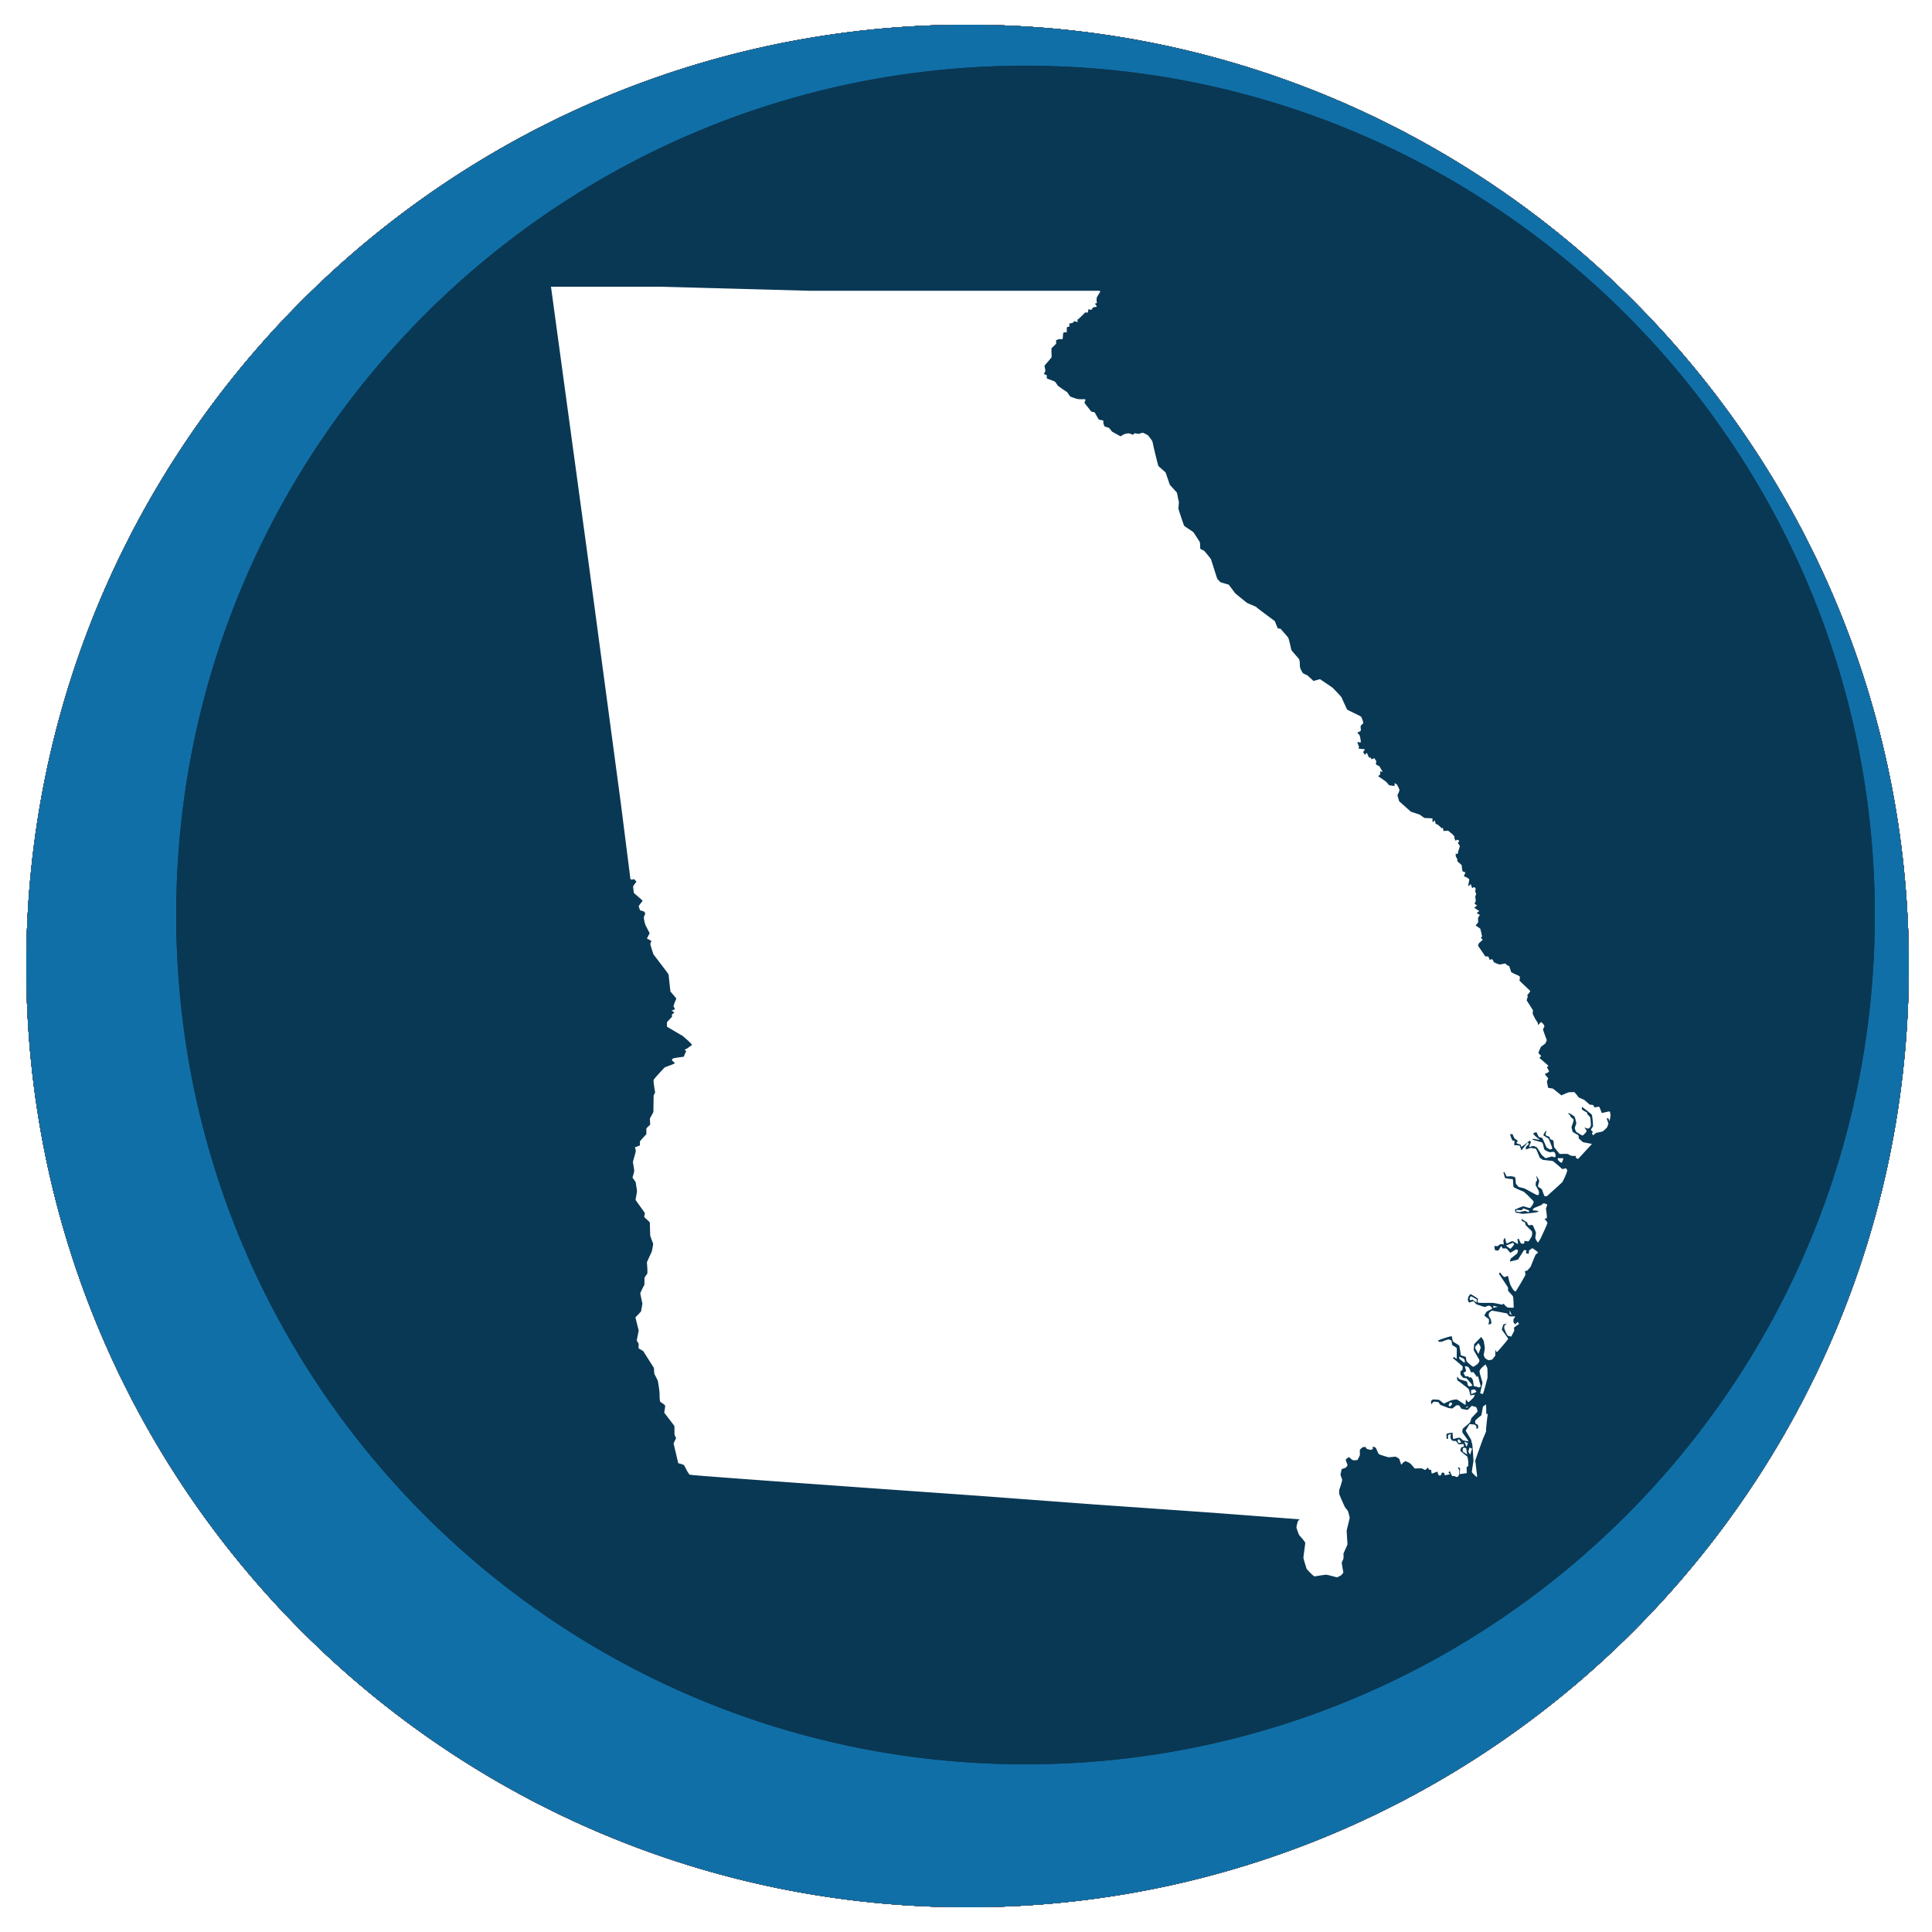 Georgia state shape in a circle